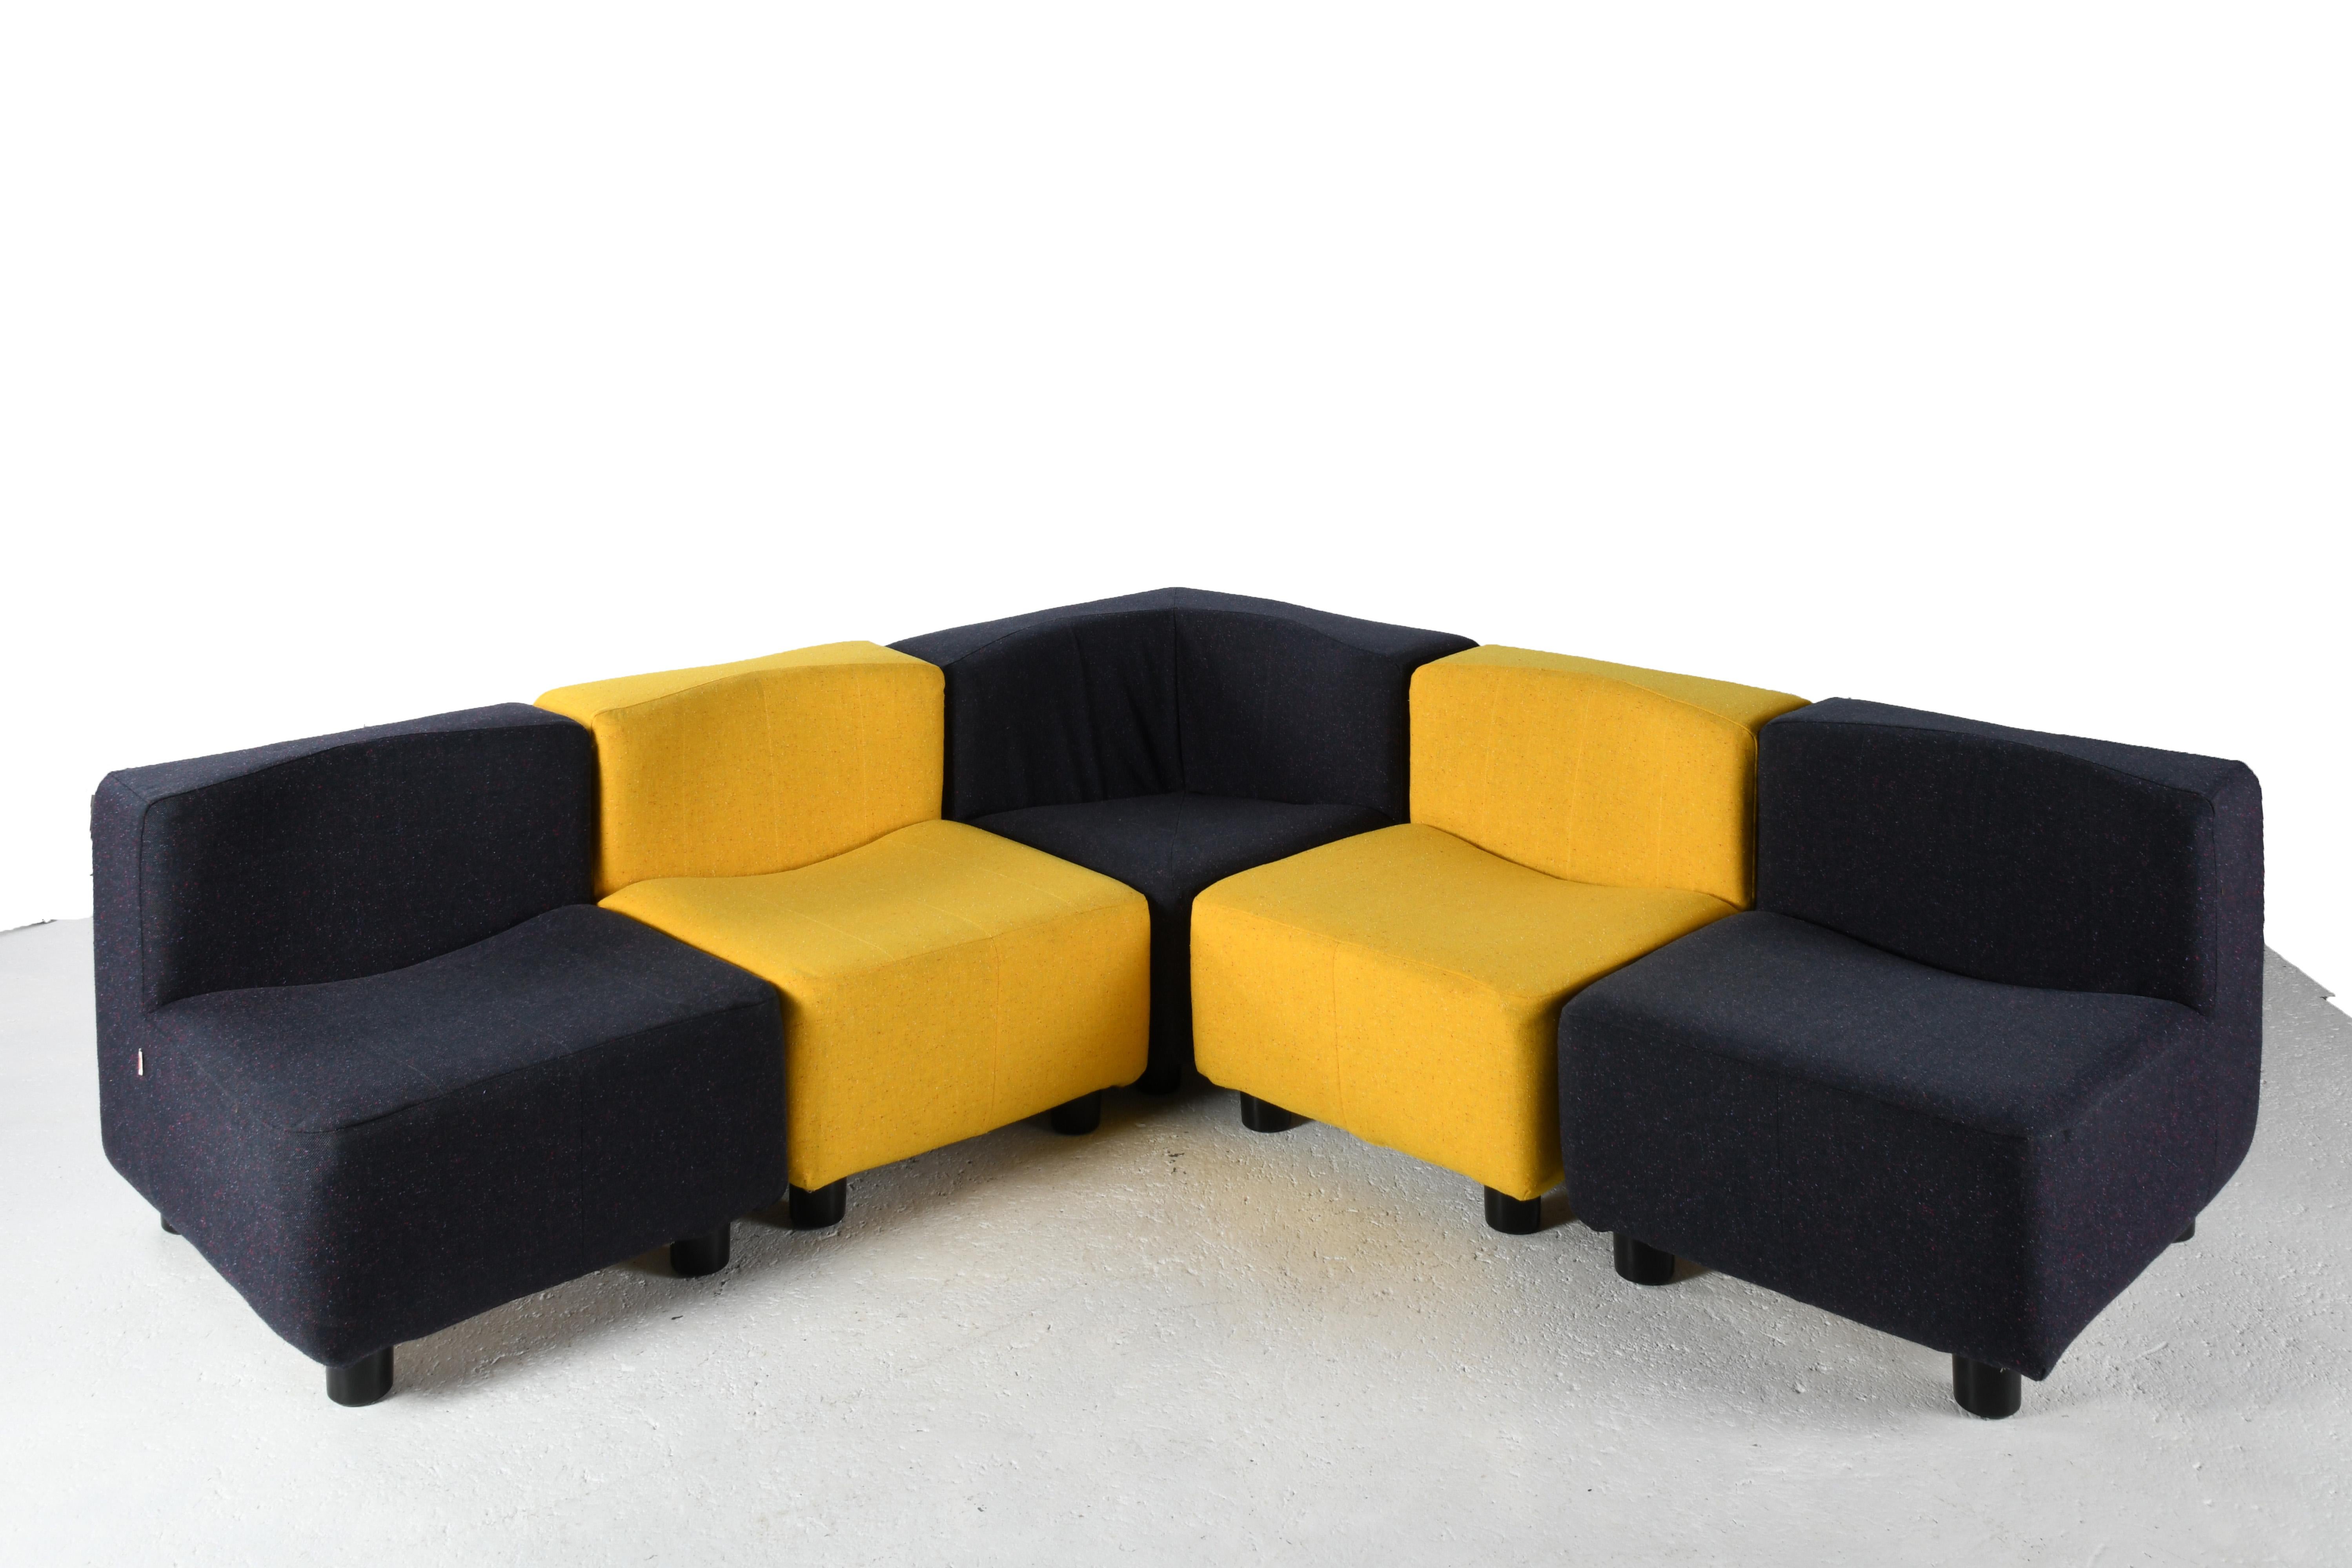 Suite de cinq fauteuils design dans le style de Tito Agnoli et de son modèle 9000 (Novemila), édité par Arfa. Structure en métal et mousse rembourrée en tissu, pieds en plastique noir. Un siège d'angle et quatre sièges droits en deux couleurs, jaune